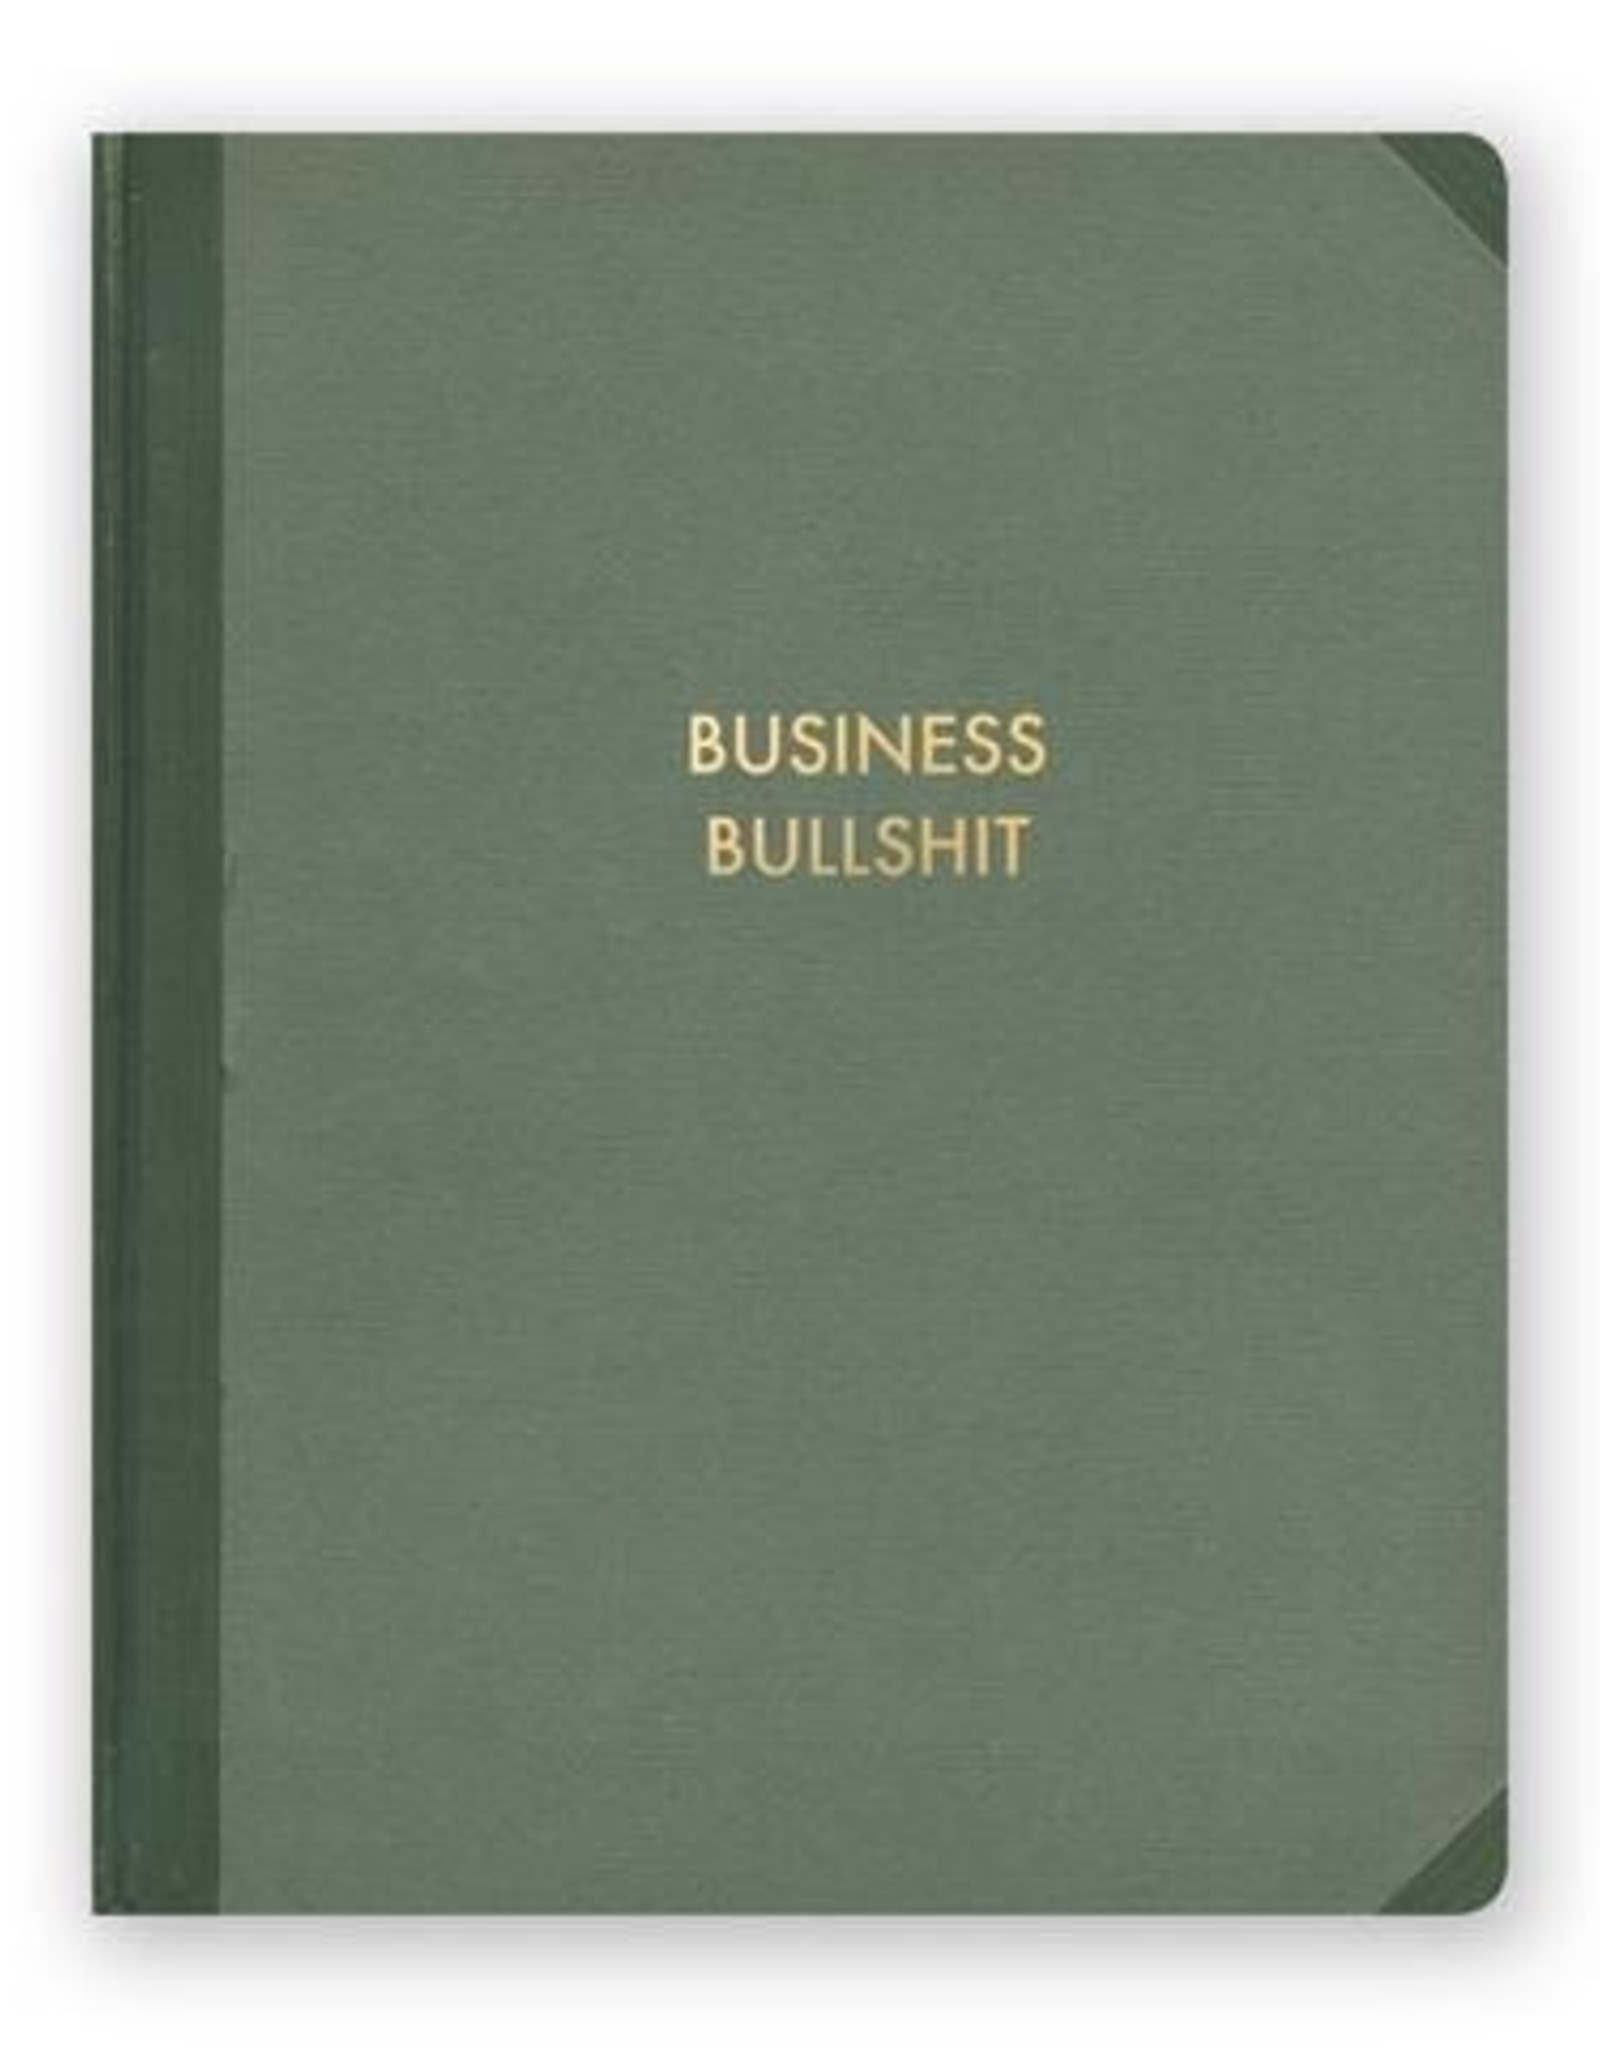 Business Bullshit Journal - Large